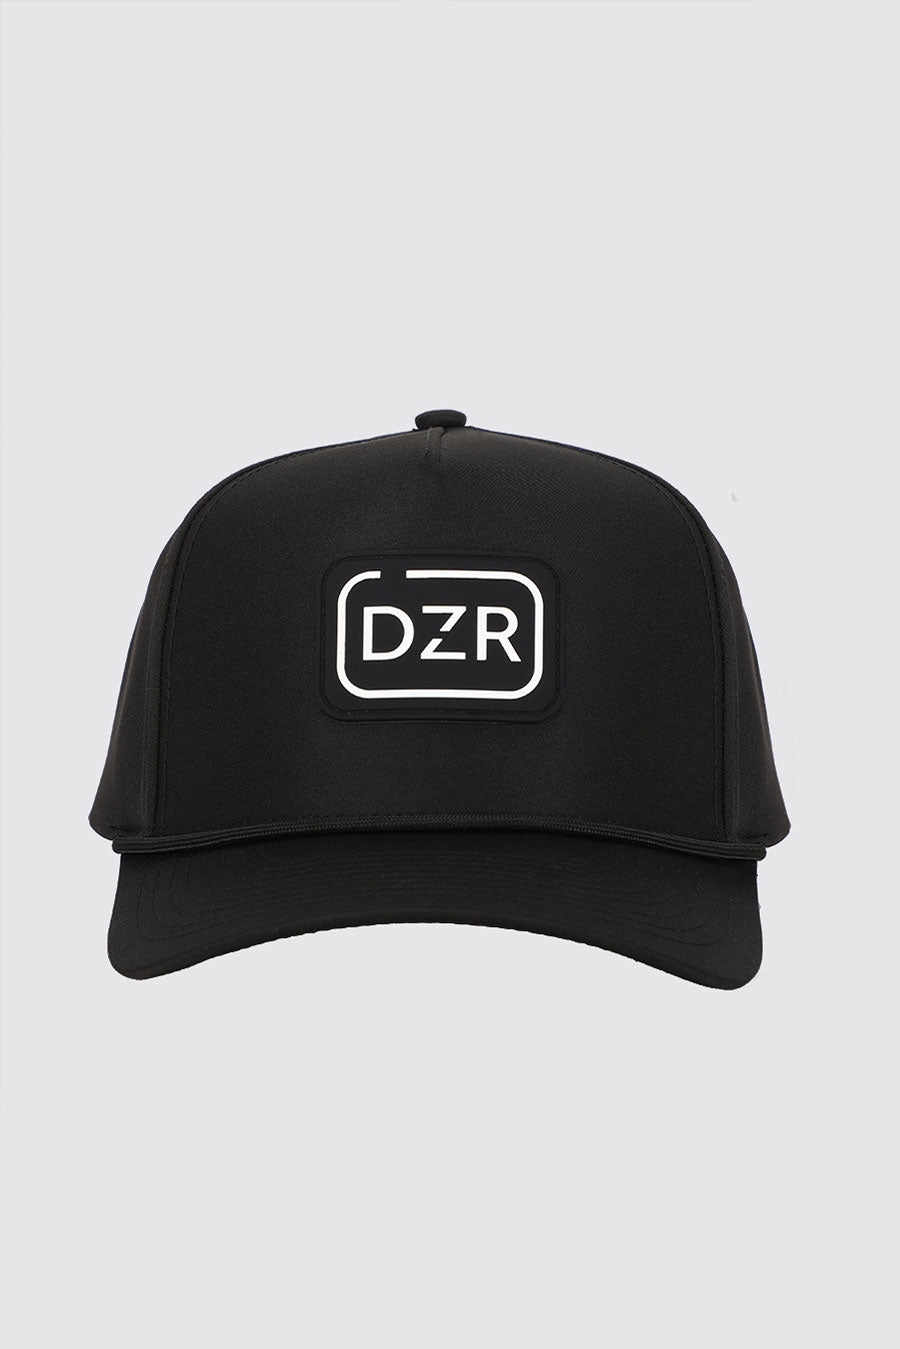 why we made the Dozer Dog Range Hat